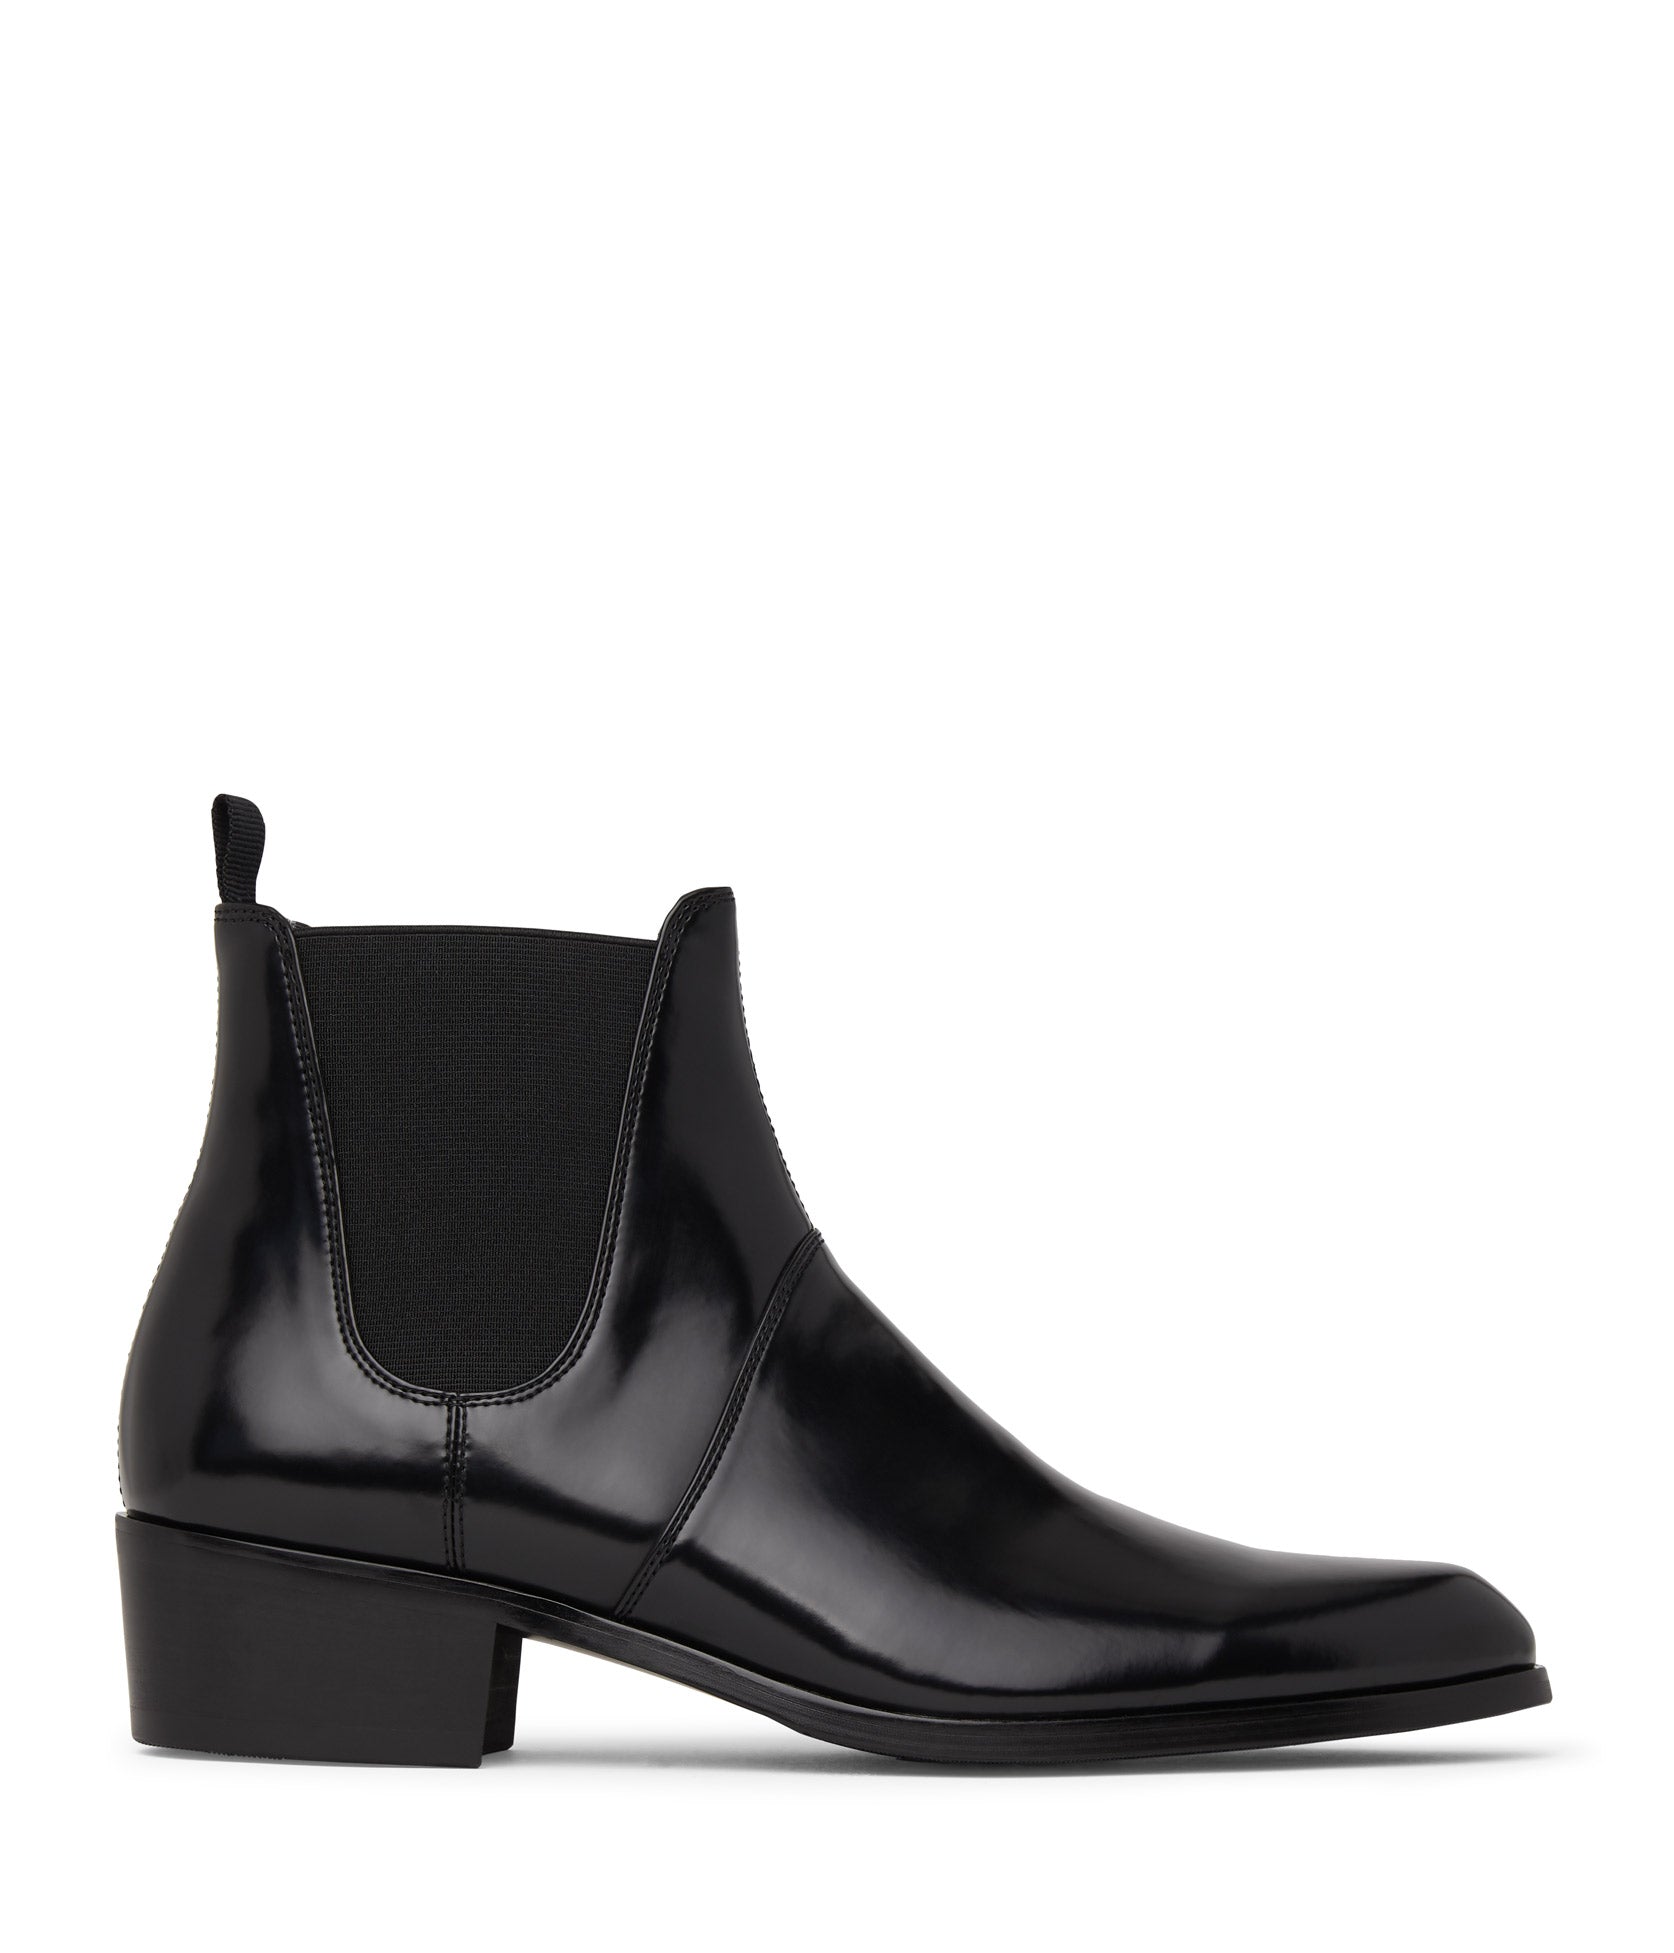 ALTON Men's Vegan Chelsea Boots | Color: Black - variant::black/pu